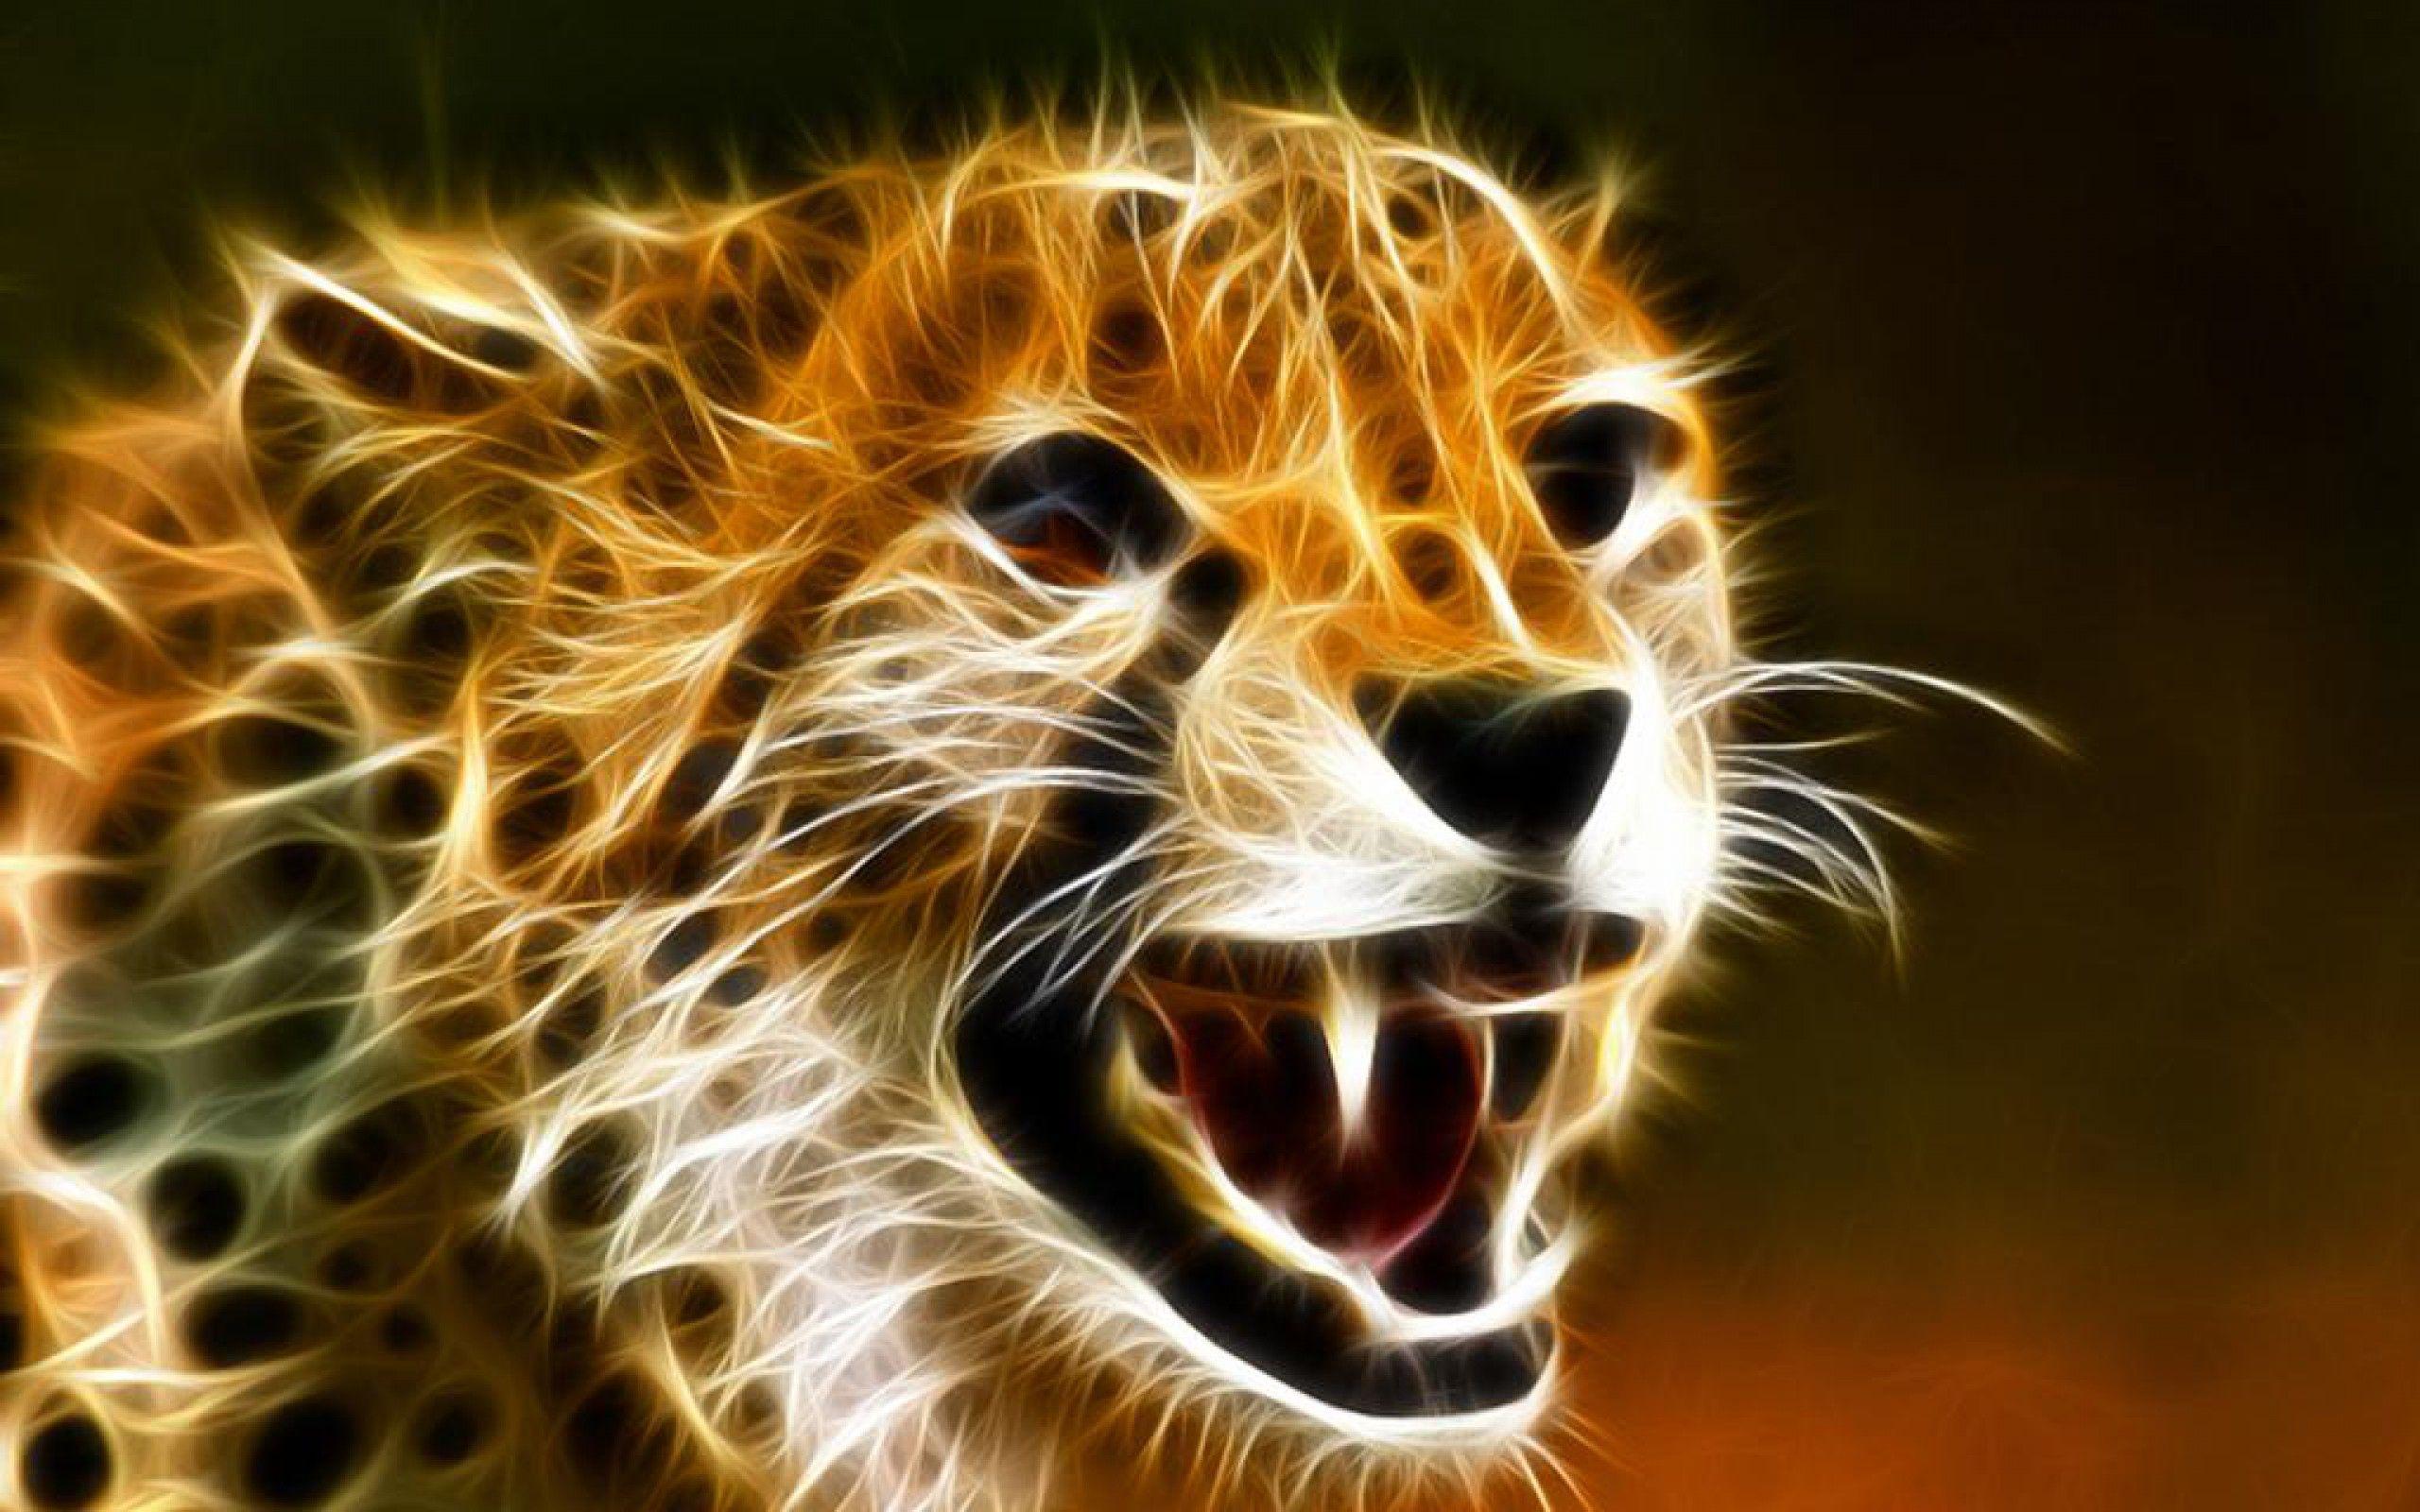 Wallpaper Cheetah